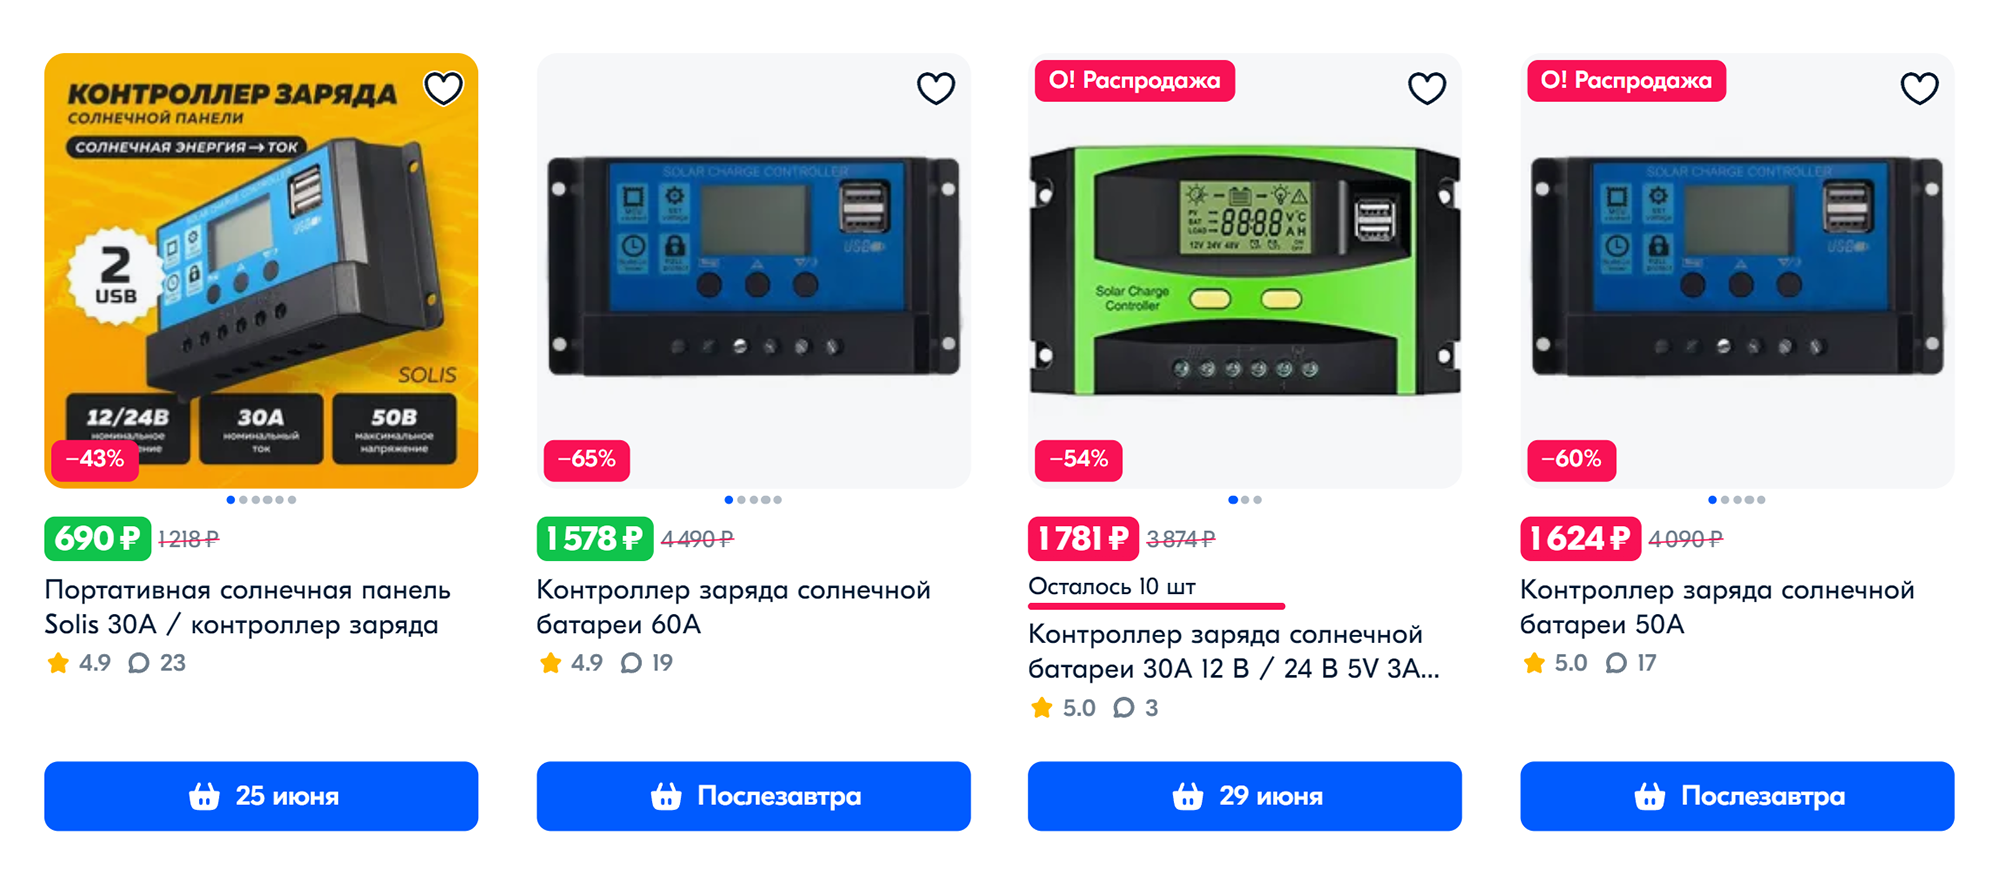 Контроллеры стоят значительно дешевле всех остальных компонентов системы. Источник: ozon.ru